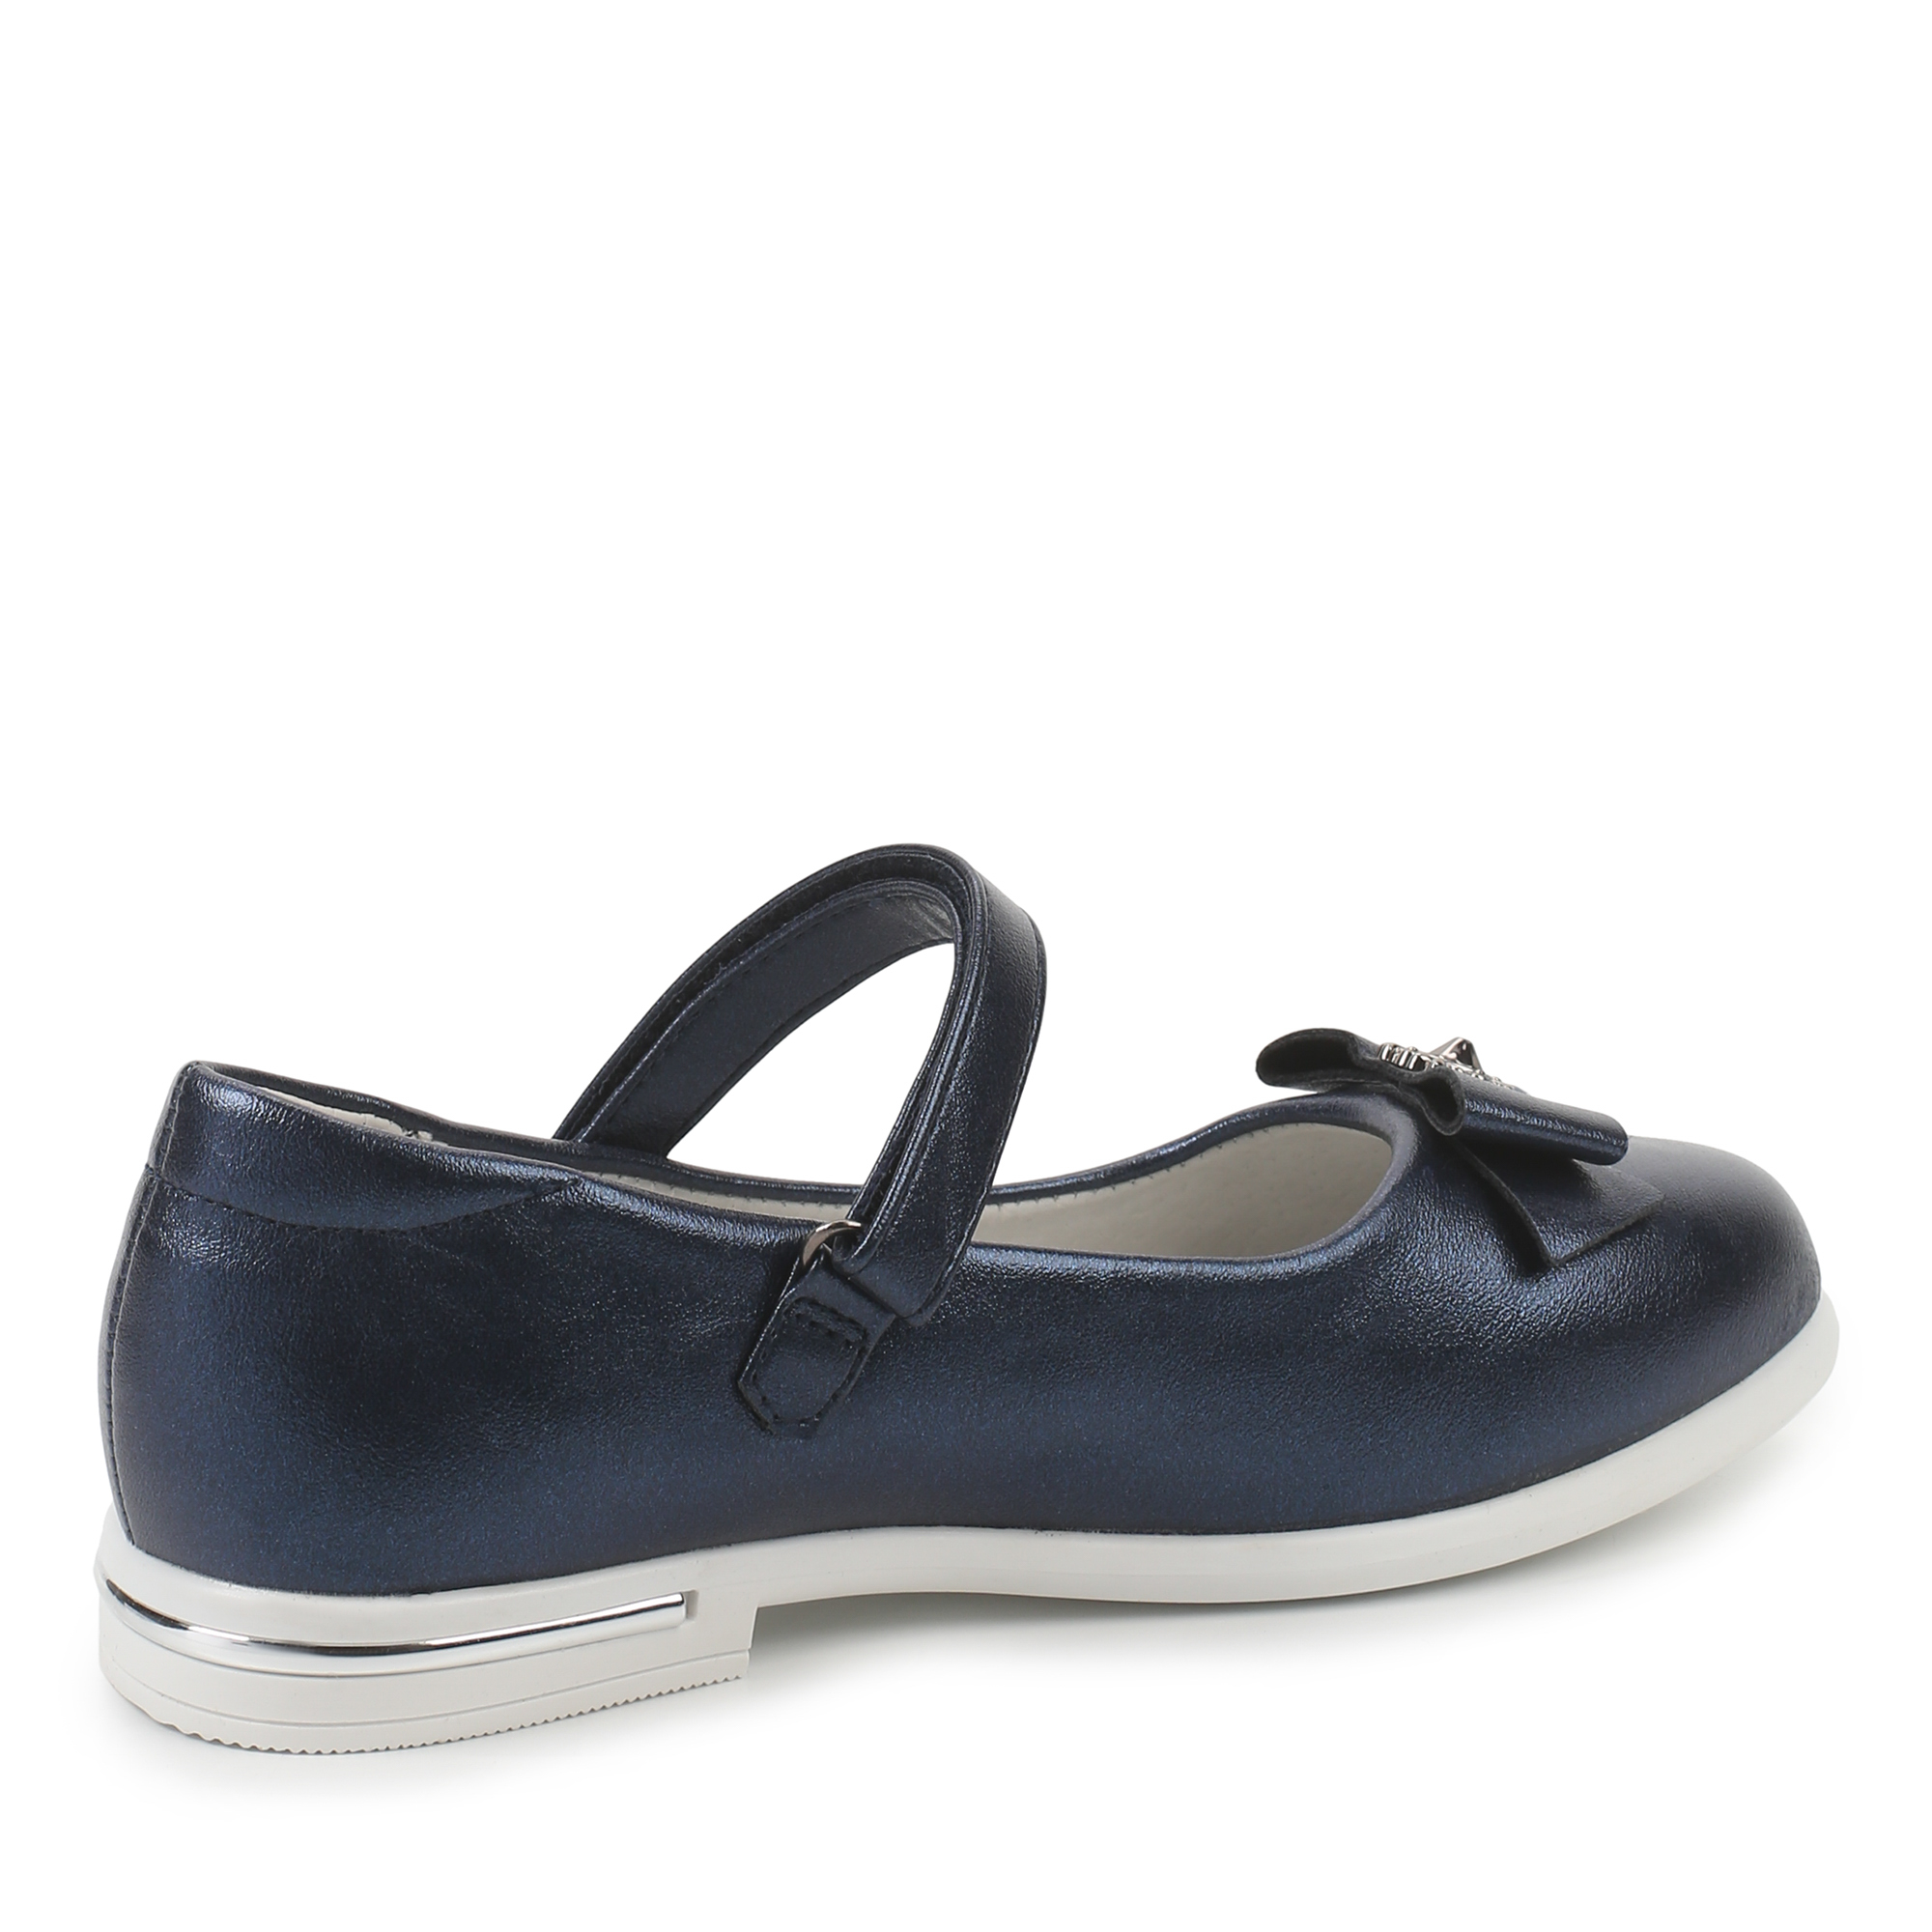 Обувь для девочек MUNZ YOUNG 174-041B-1603, цвет синий, размер 31 - фото 3